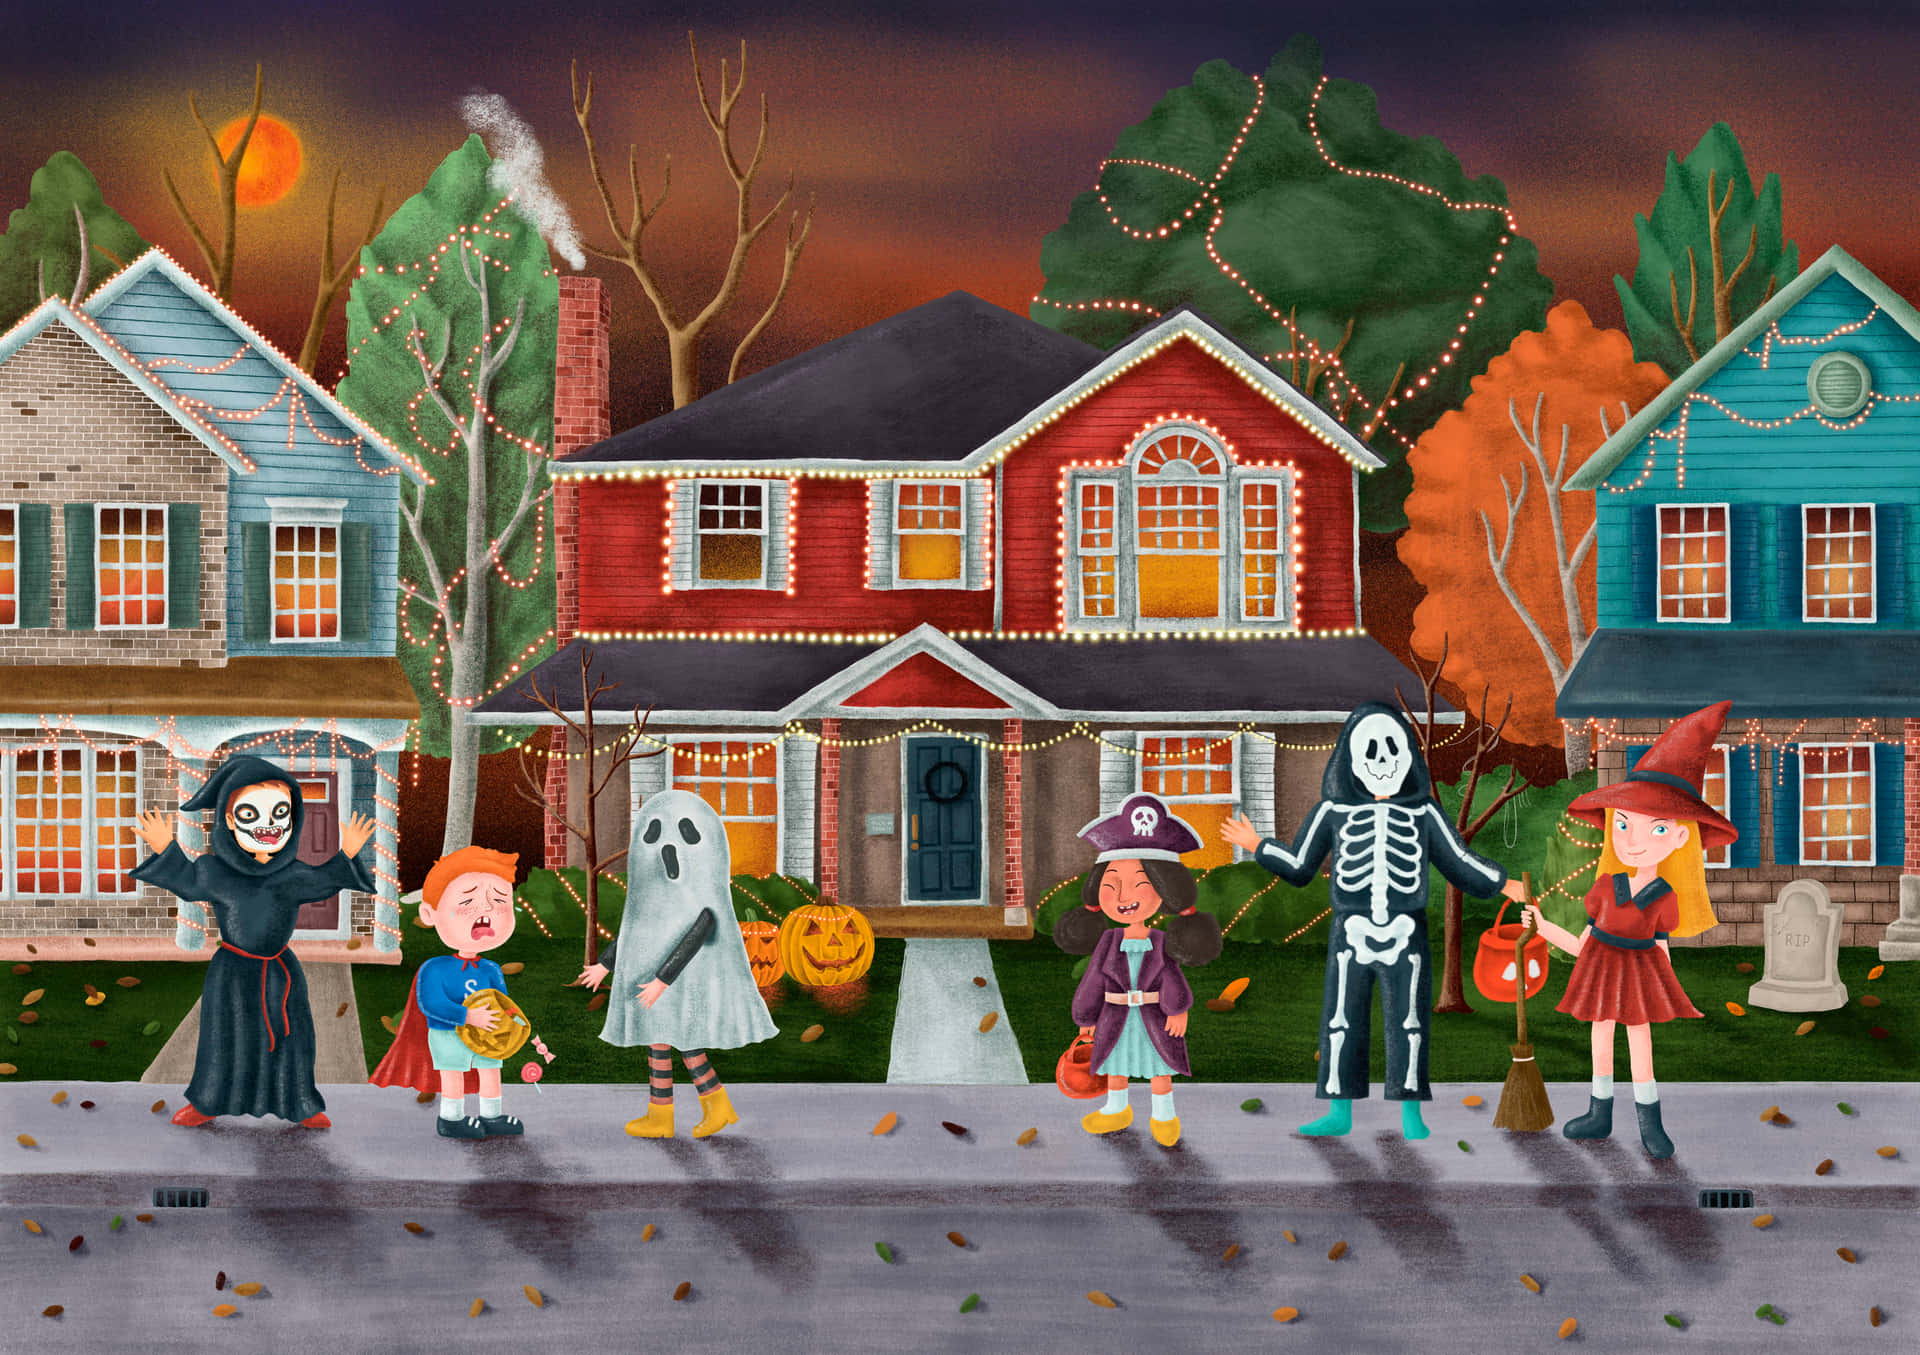 Imagende La Casa De Los Fantasmas Con Amigos De Halloween.